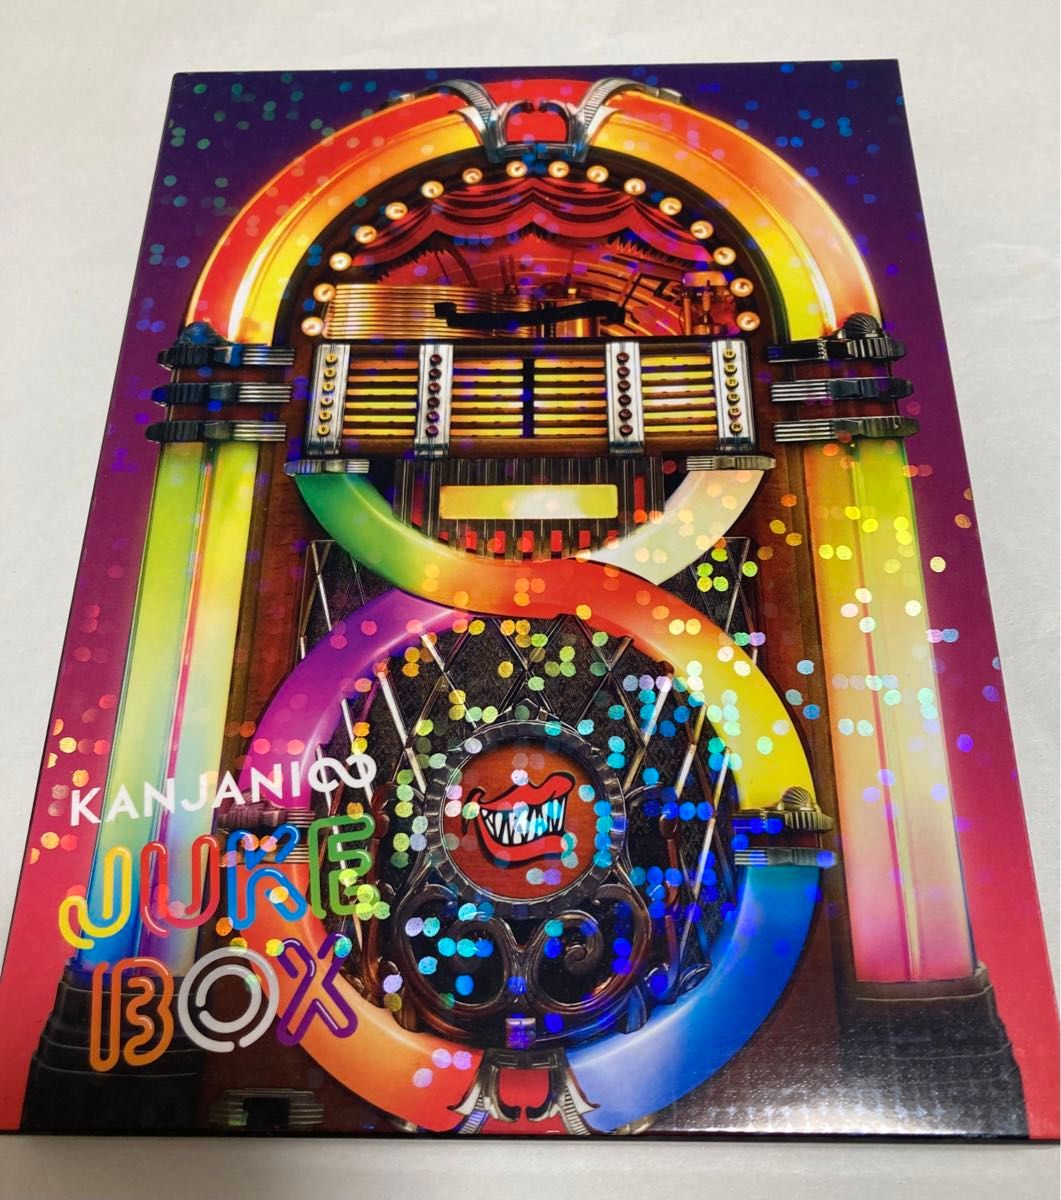 関ジャニ∞ CDアルバム JUKE BOX 初回限定盤A・初回限定盤B・通常盤 3枚セット